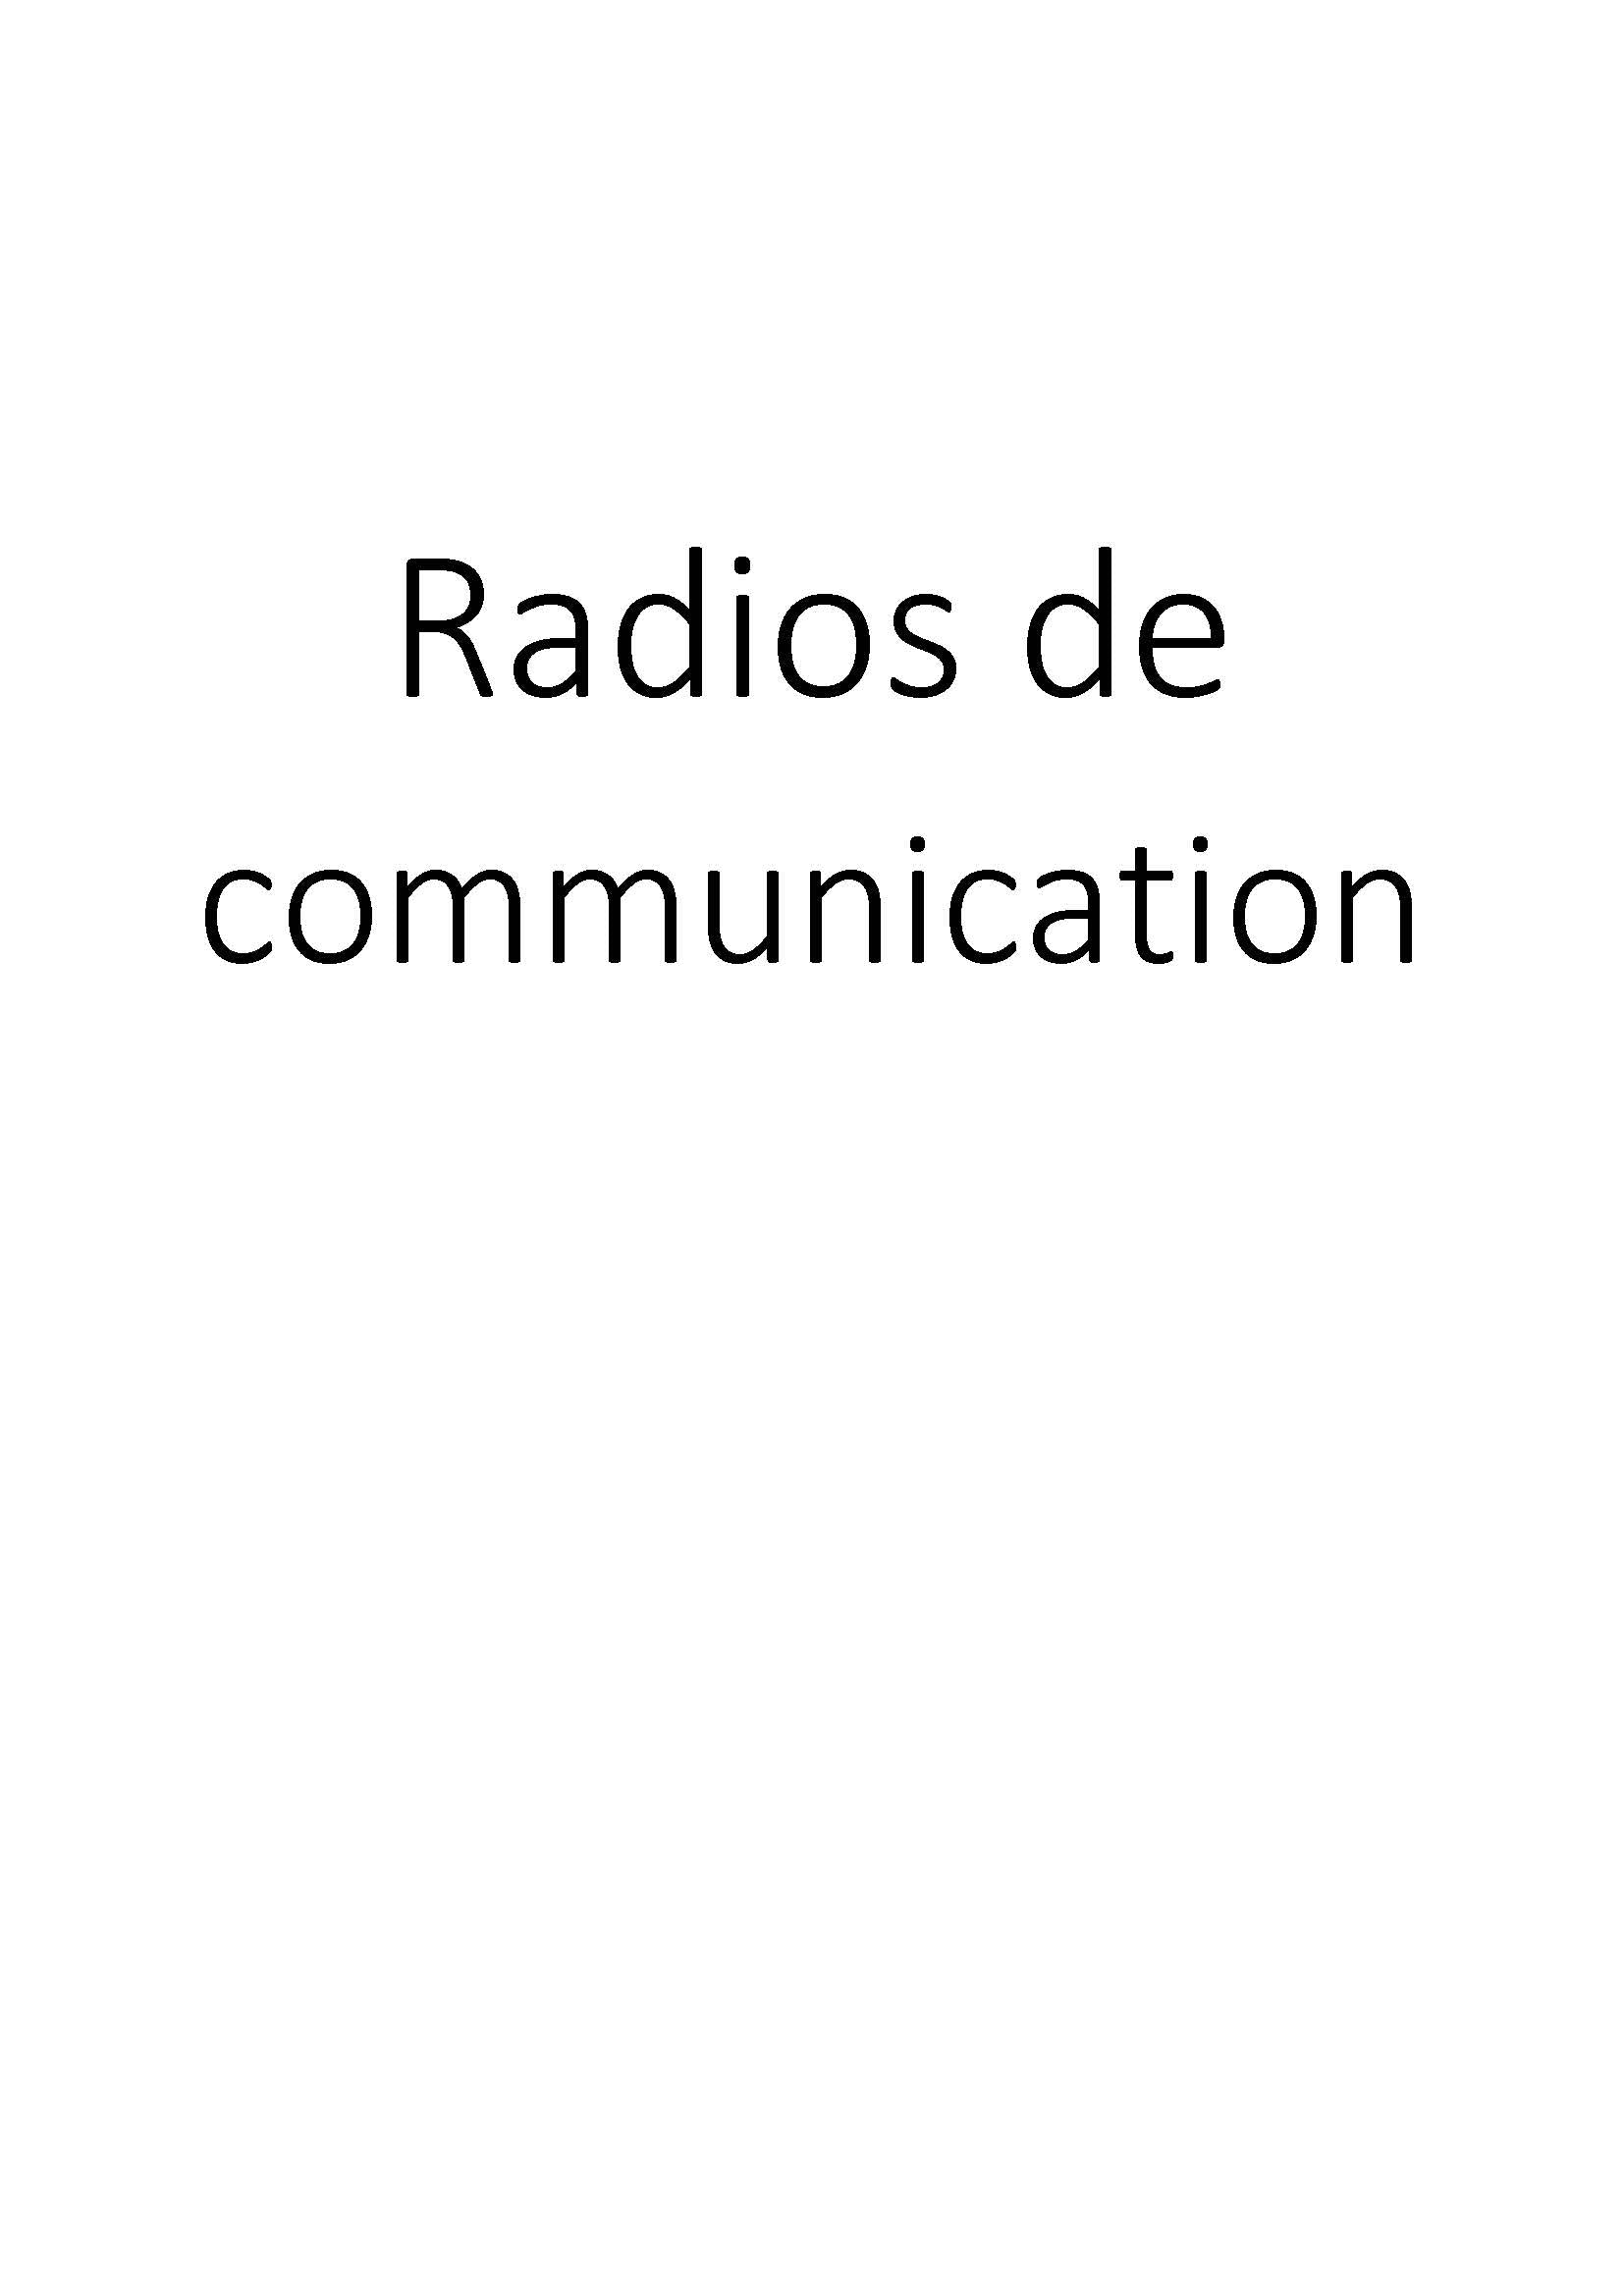 Radios de communication clicktofournisseur.com